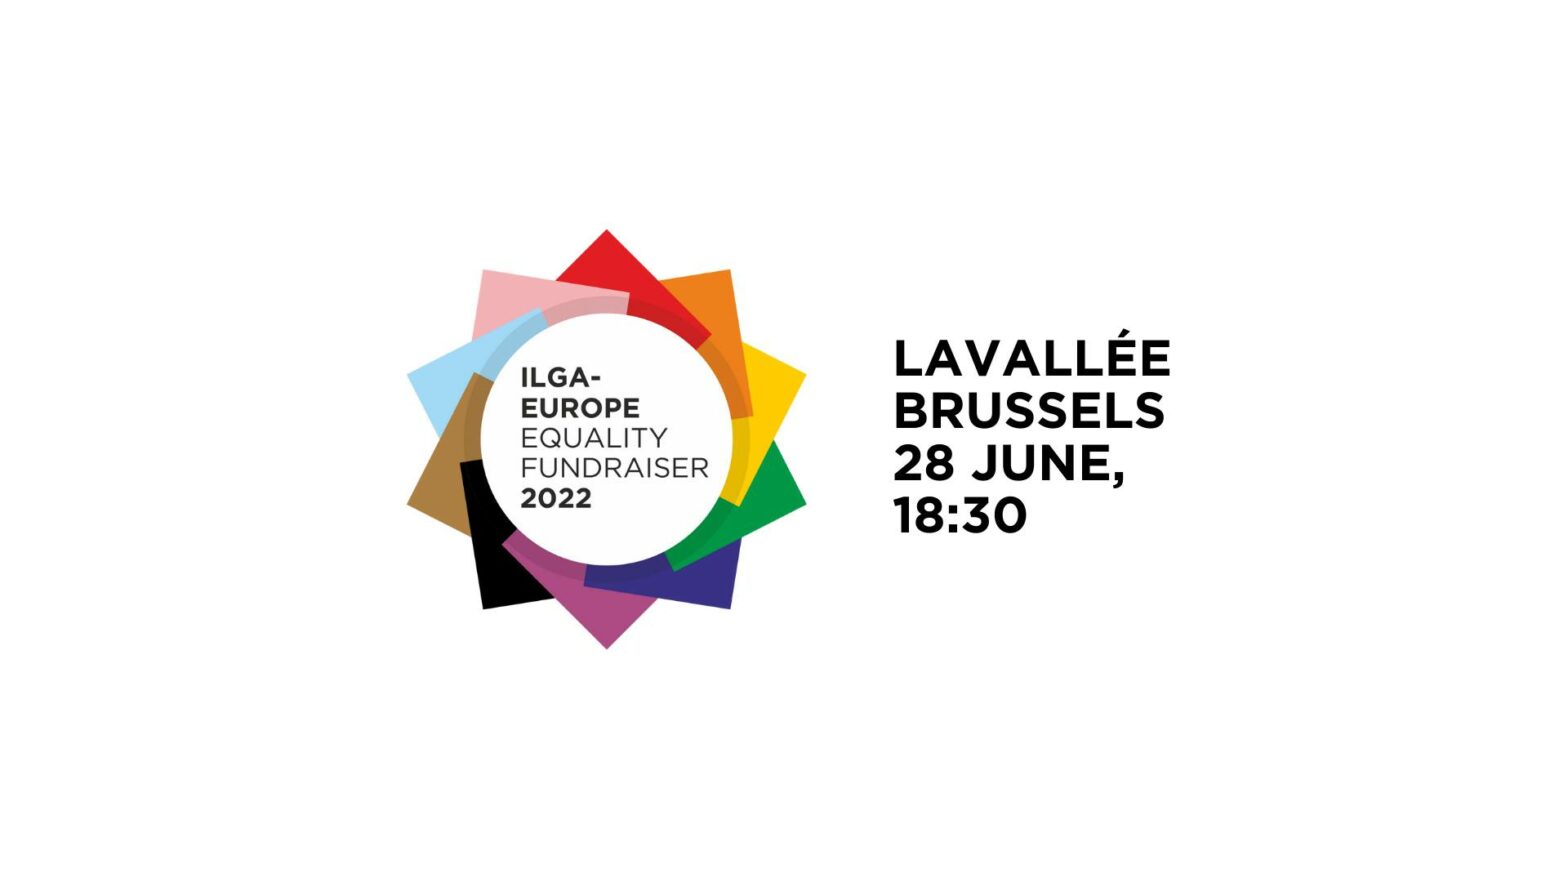 ILGA-Europe Equality Fundraiser 2022